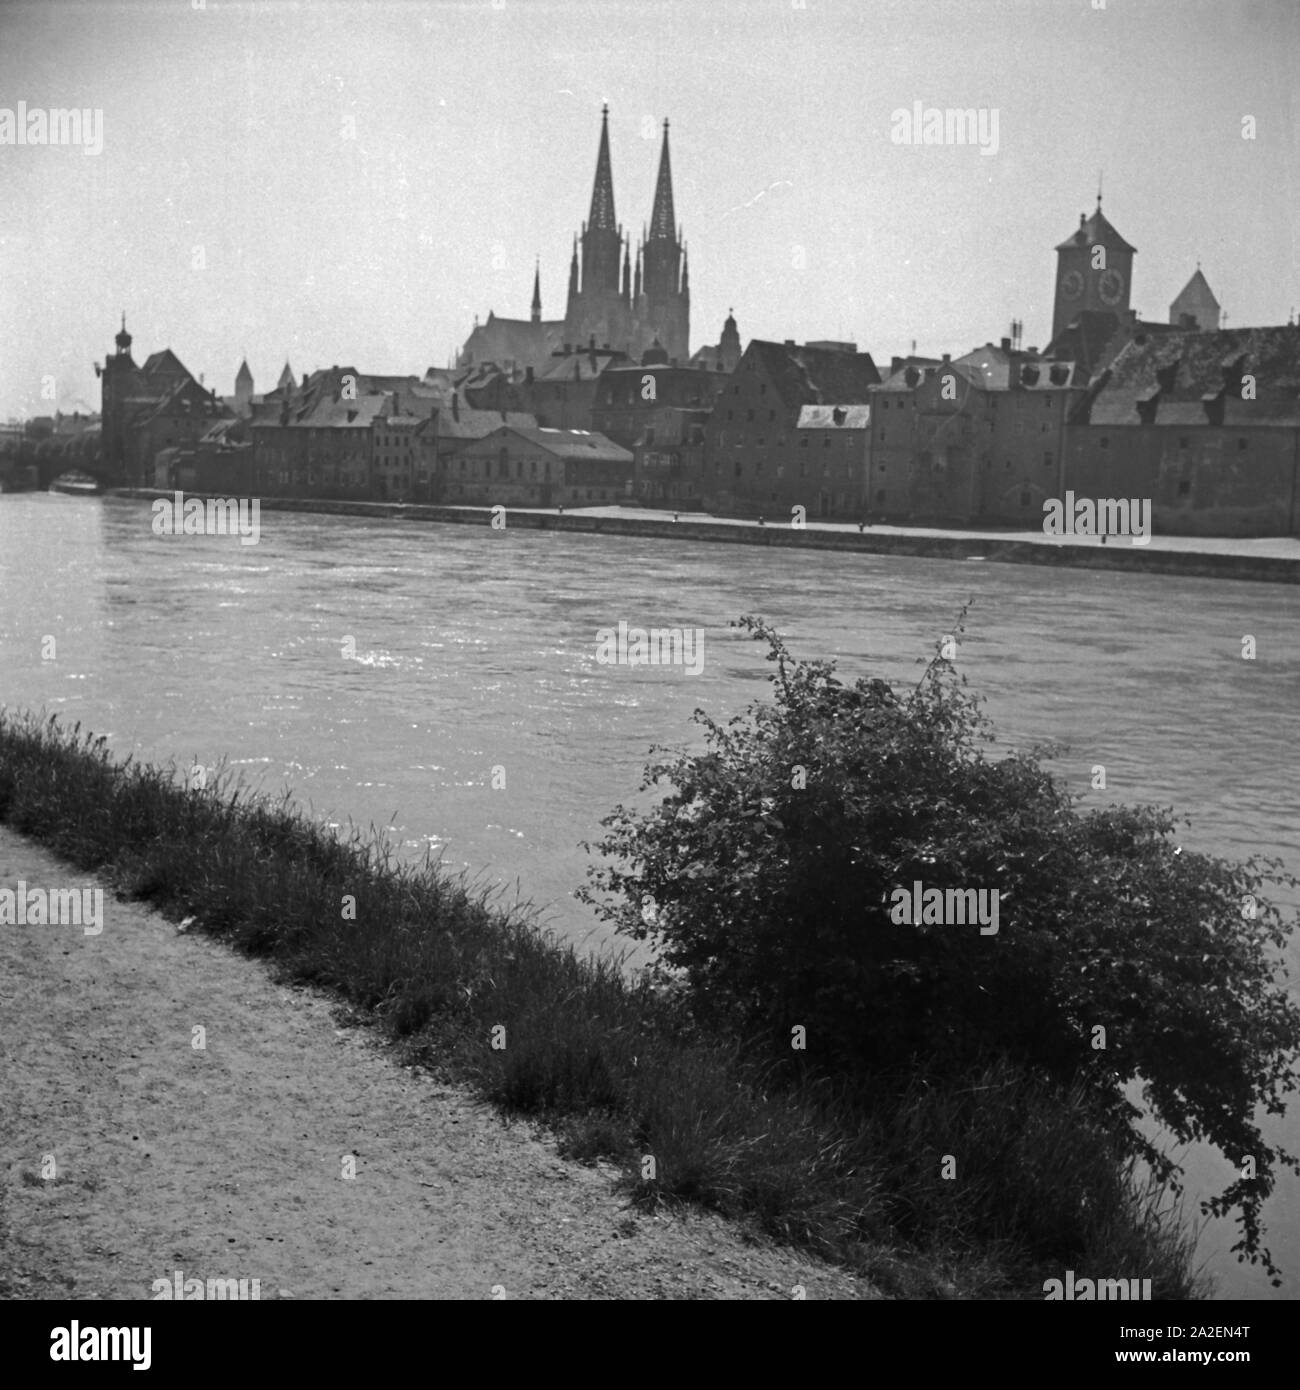 Blick auf das Panorama von Regensburg mit der Donau, dem Dom und dem Uhrturm am Alten Rathaus, Deutschland 1930er Jahre. Regensburg Skyline mit Kathedrale, Fluss Daunbe und der Turm des Alten Rathauses, Deutschland 1930. Stockfoto